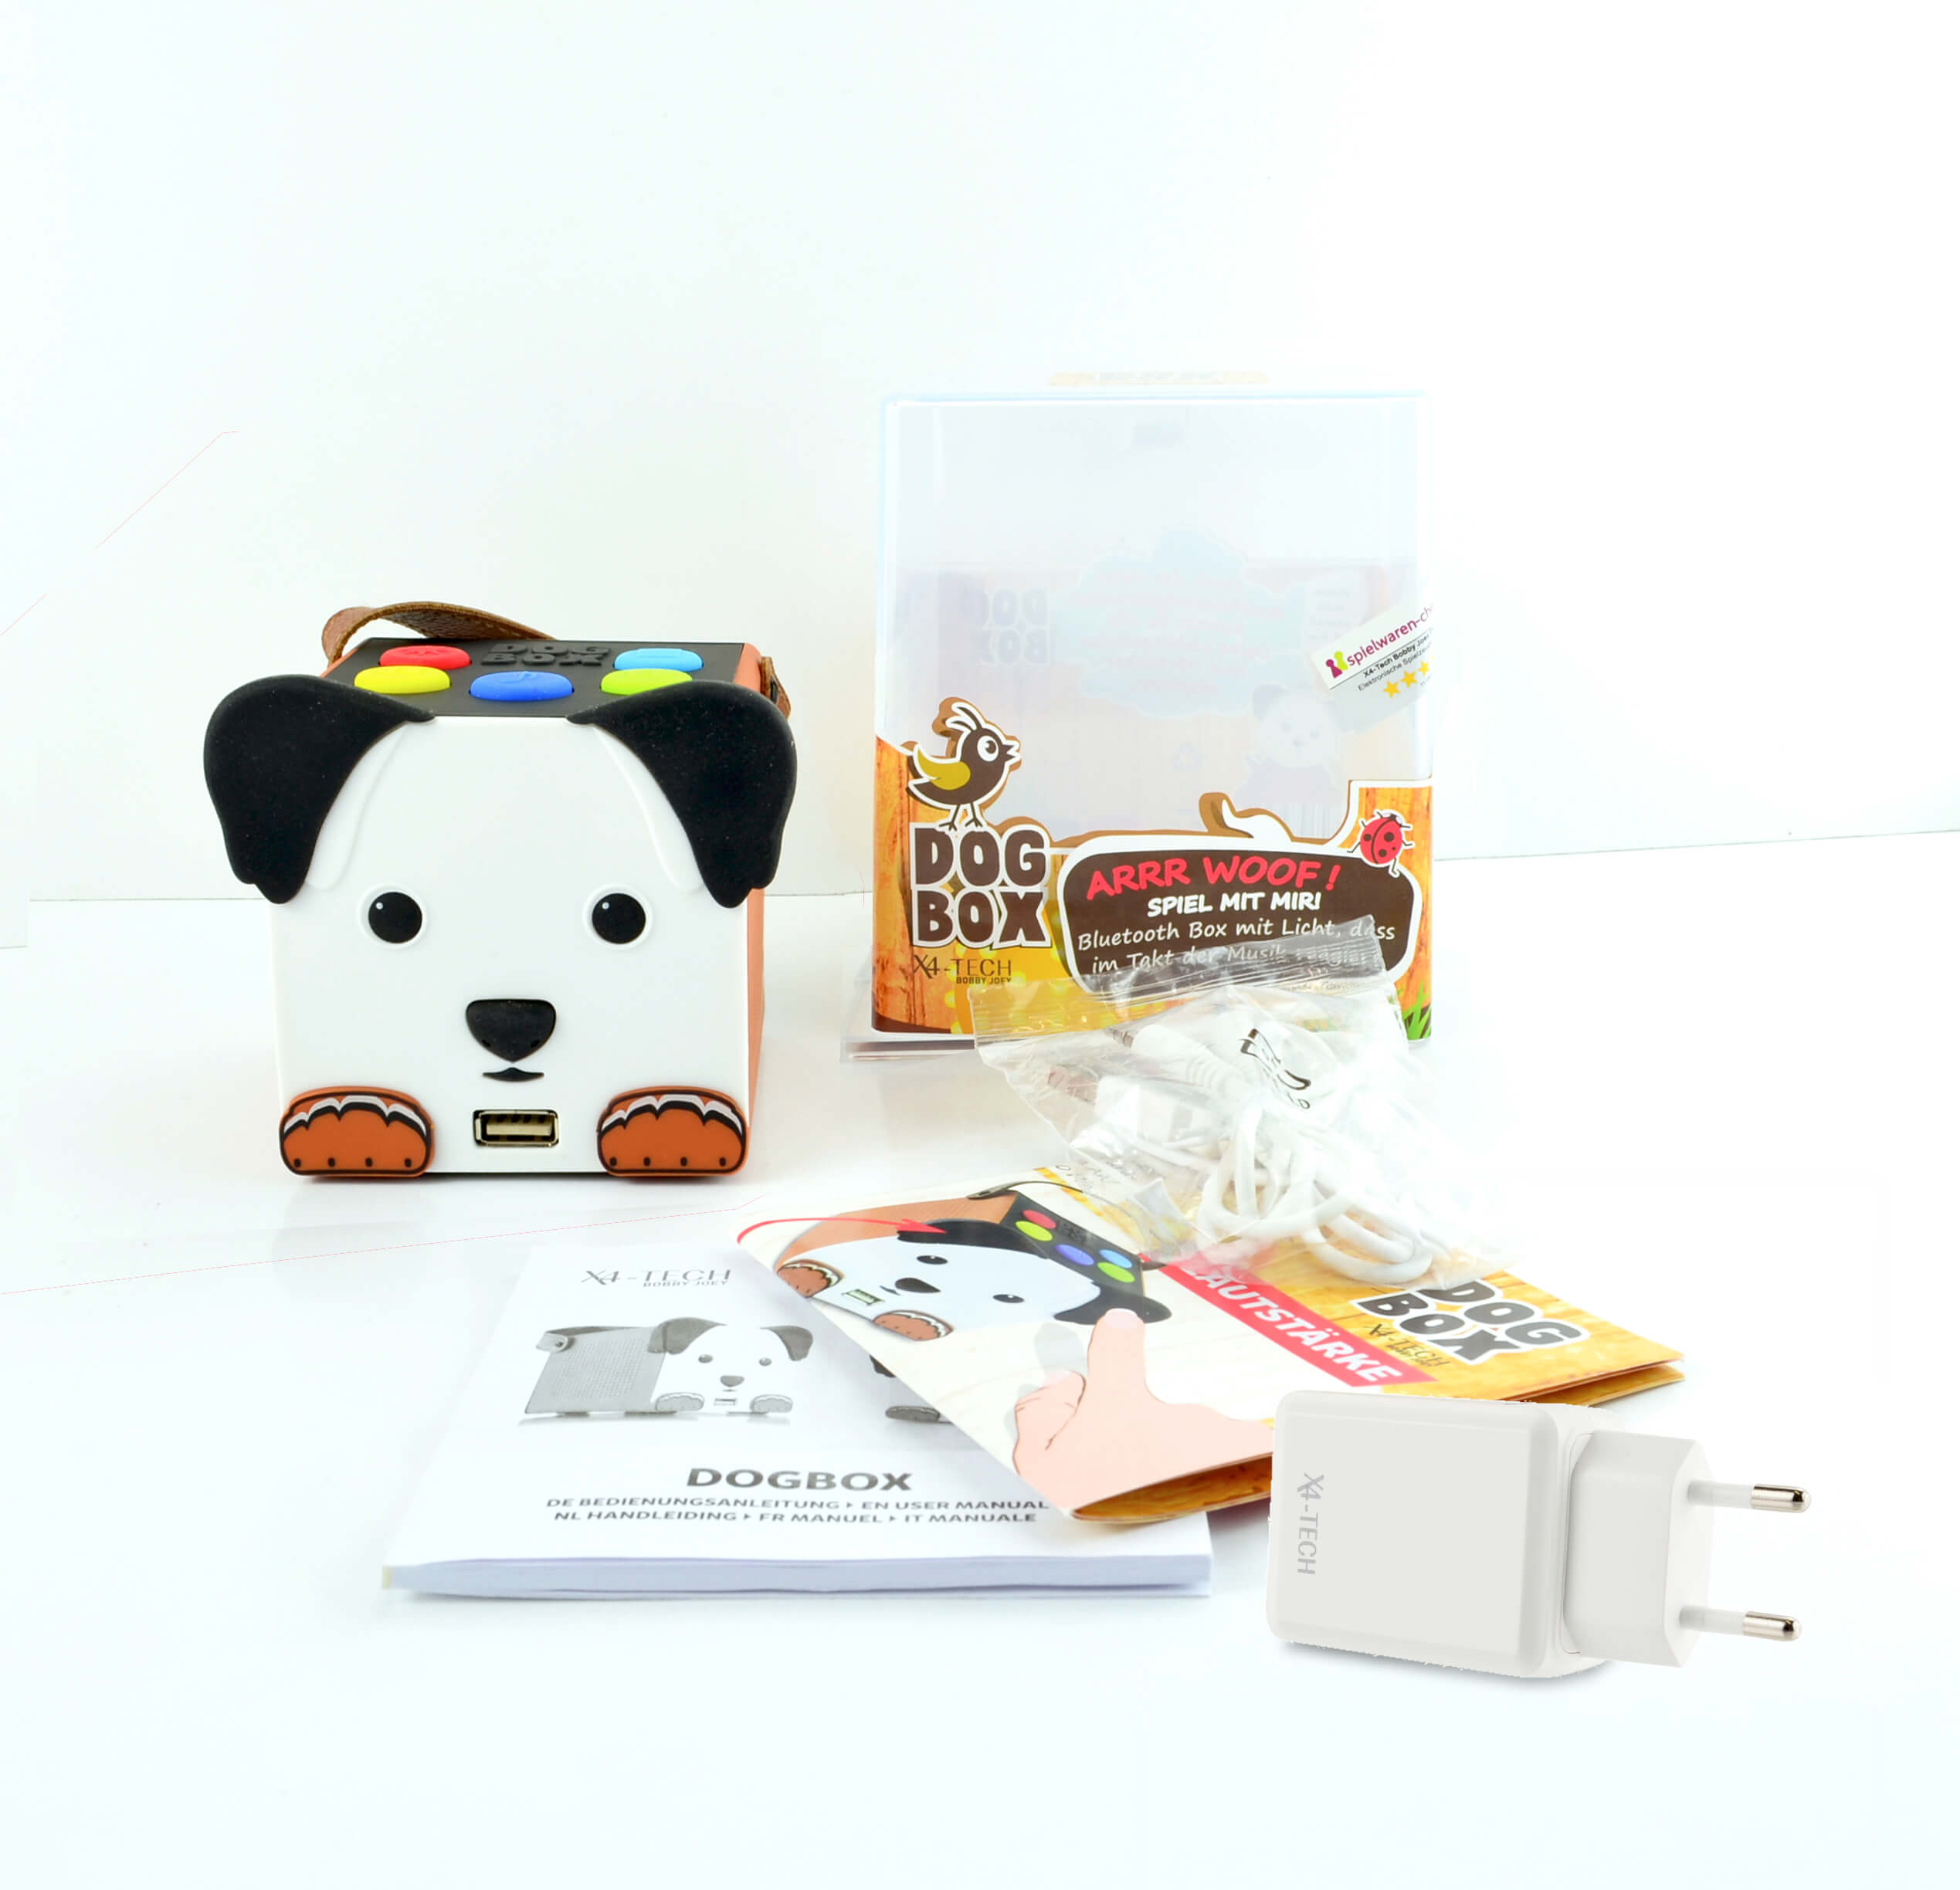 X4-TECH DogBox Kinder Lautsprecher, Kopplung über Bluetooth mit dem Smartphone oder Tablett, Musikwiedergabe SD-Karte, USB Stick, spielerisch bedienen